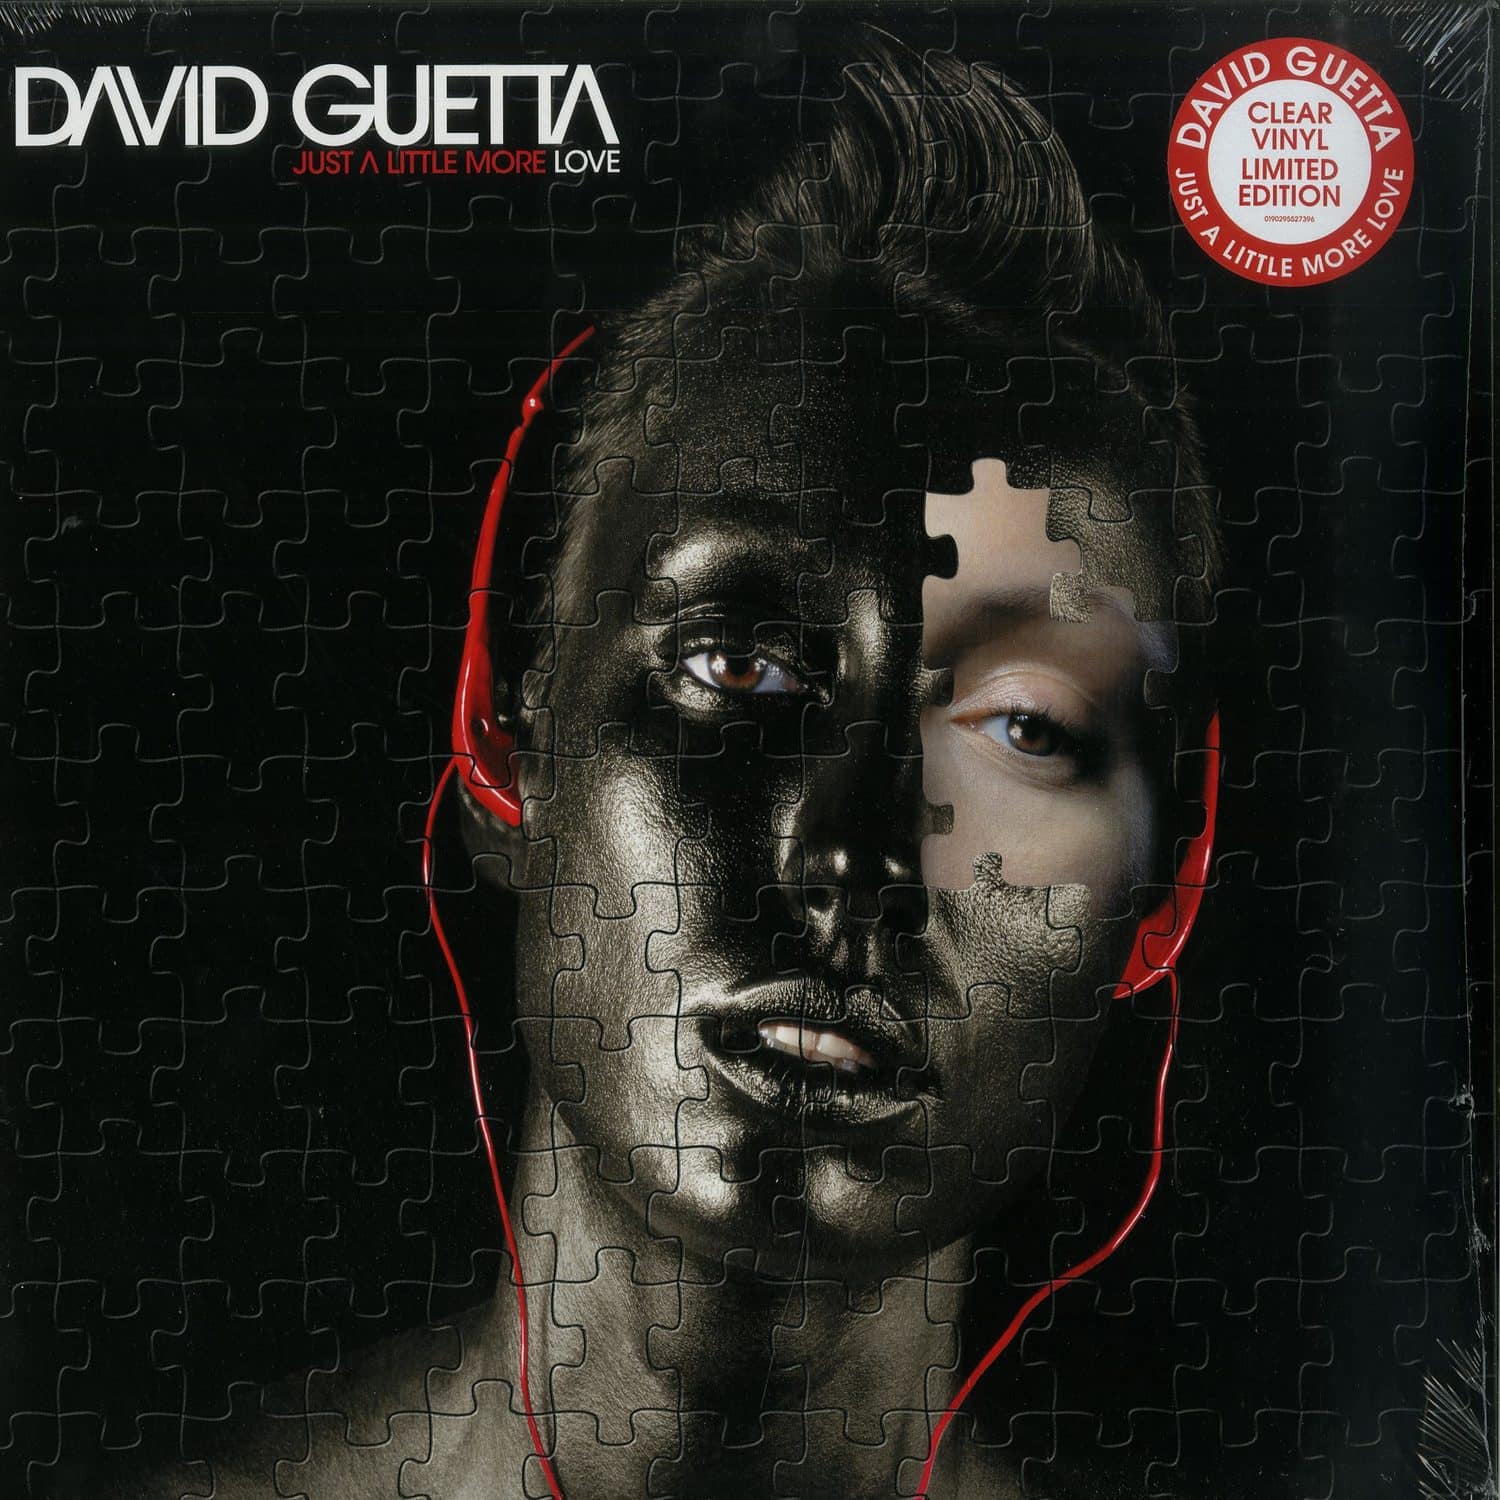 David Guetta - JUST A LITTLE MORE LOVE 